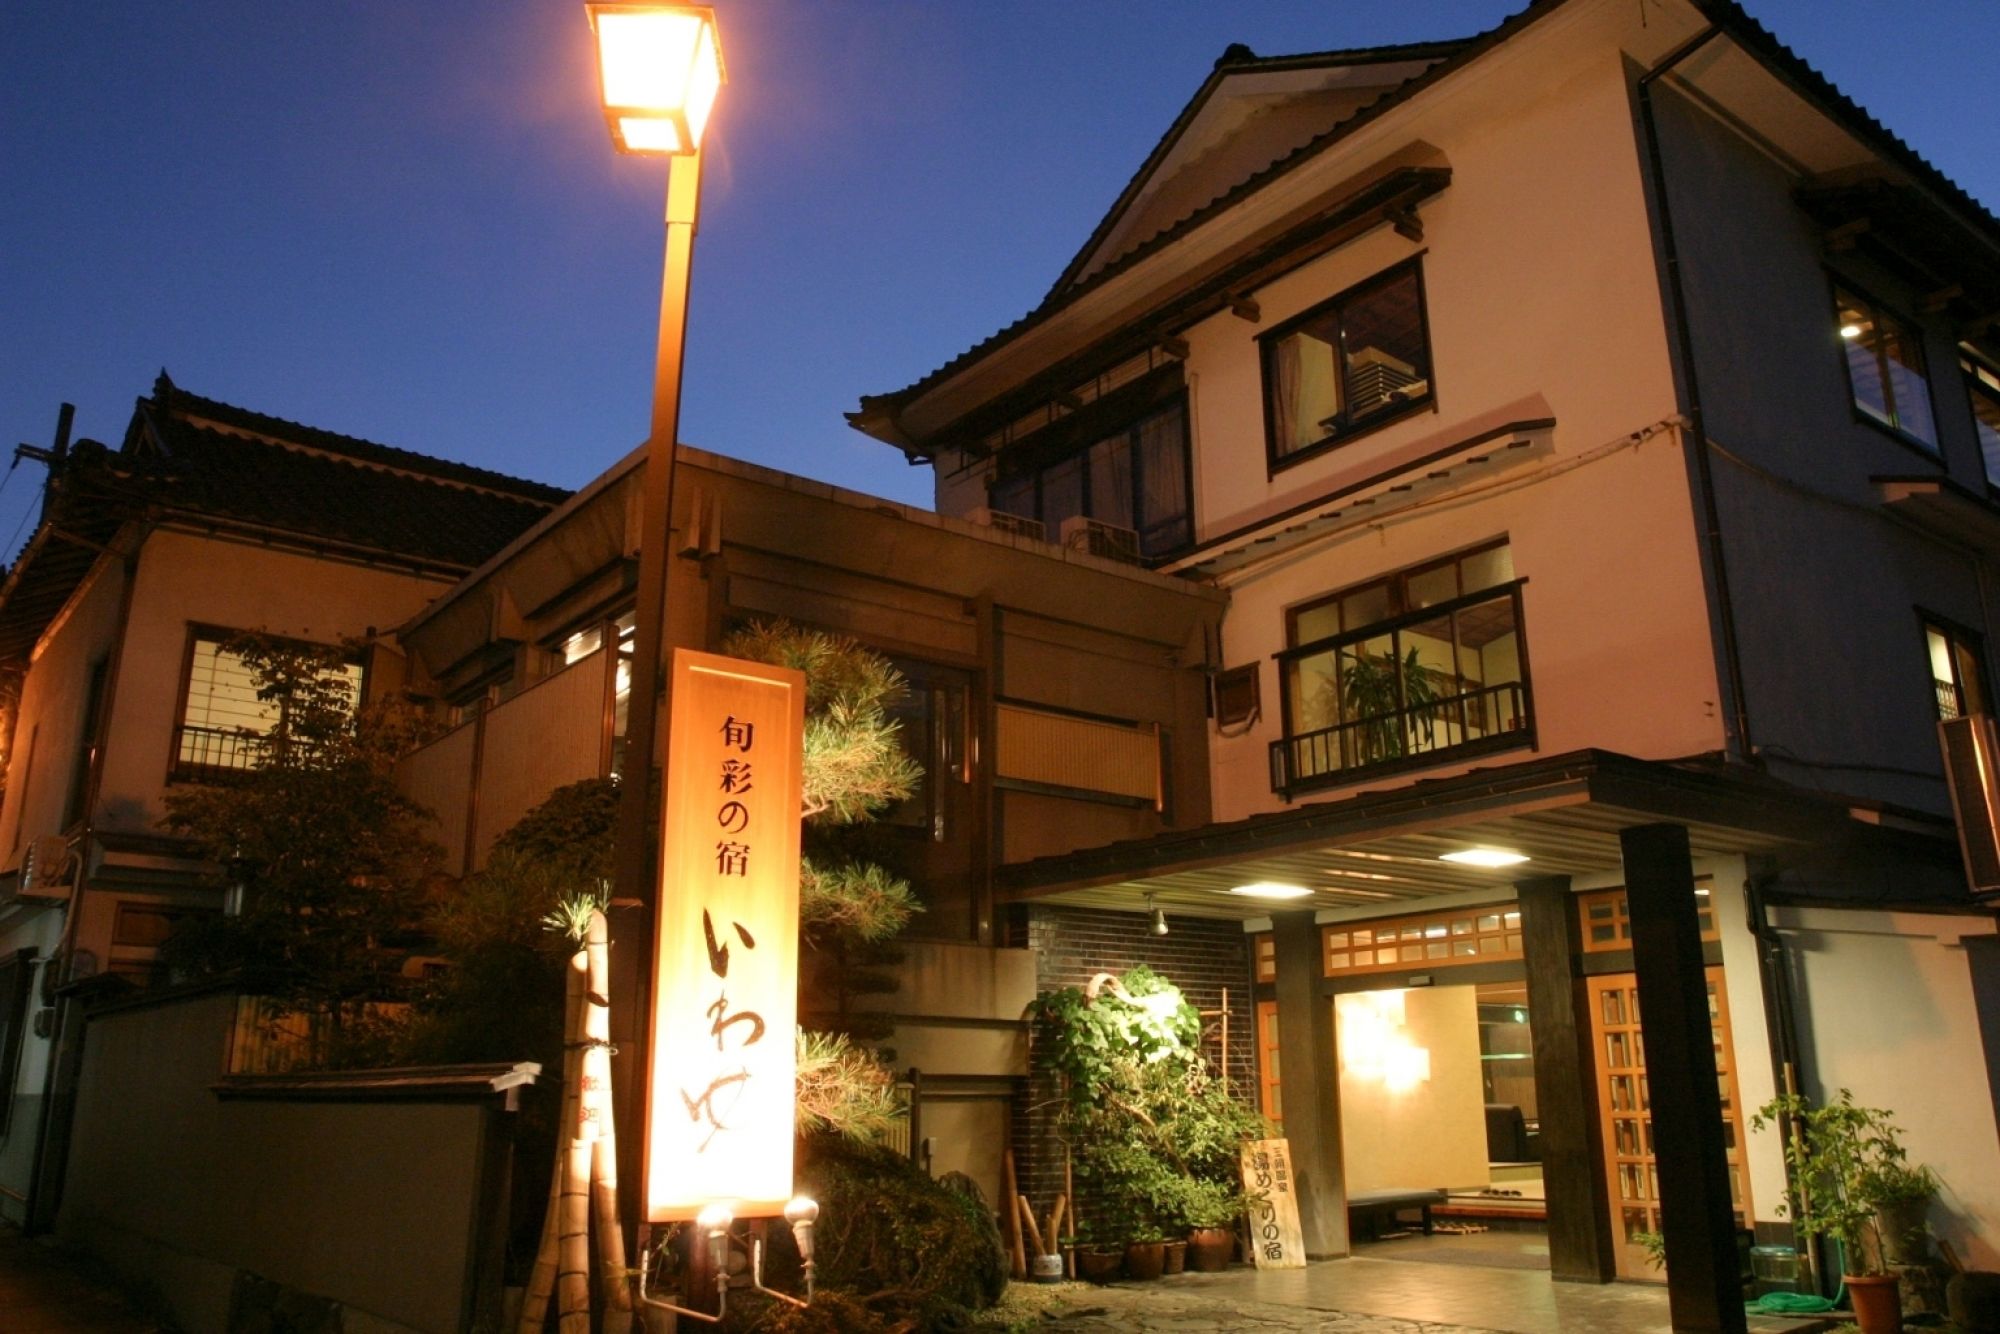 旬彩の宿 いわゆ 三朝温泉 関金温泉 西日本の素敵な宿 高枕 たかまくら